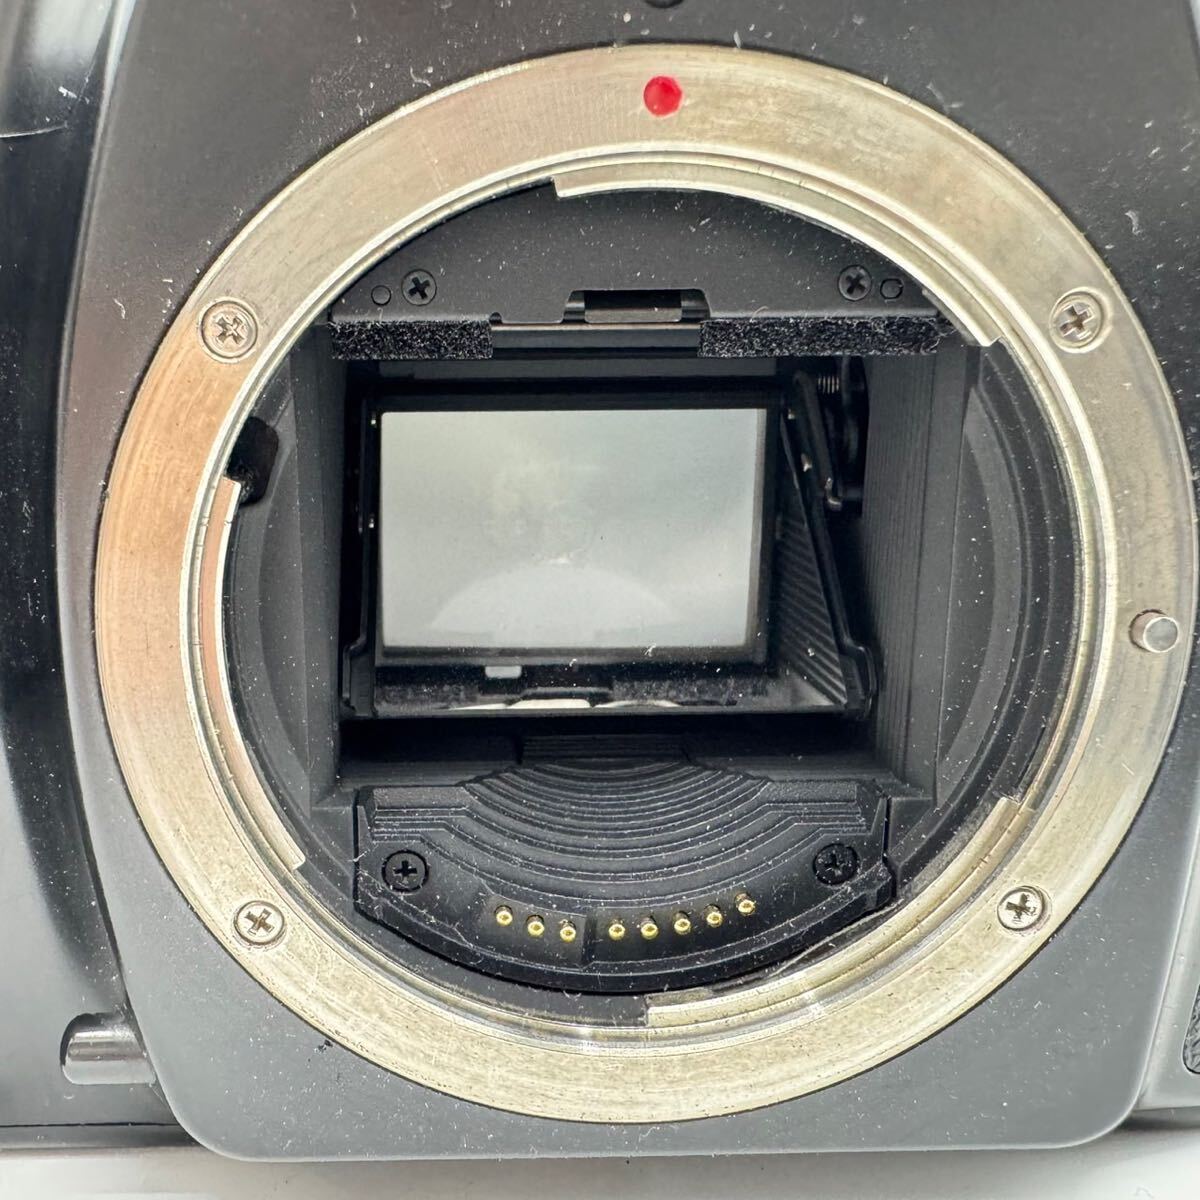 CANON キャノン EOS-1n ボディ フィルムカメラ 35mmシステム 一眼レフカメラ プレーンシャッター式 オートフォーカス キヤノン の画像2